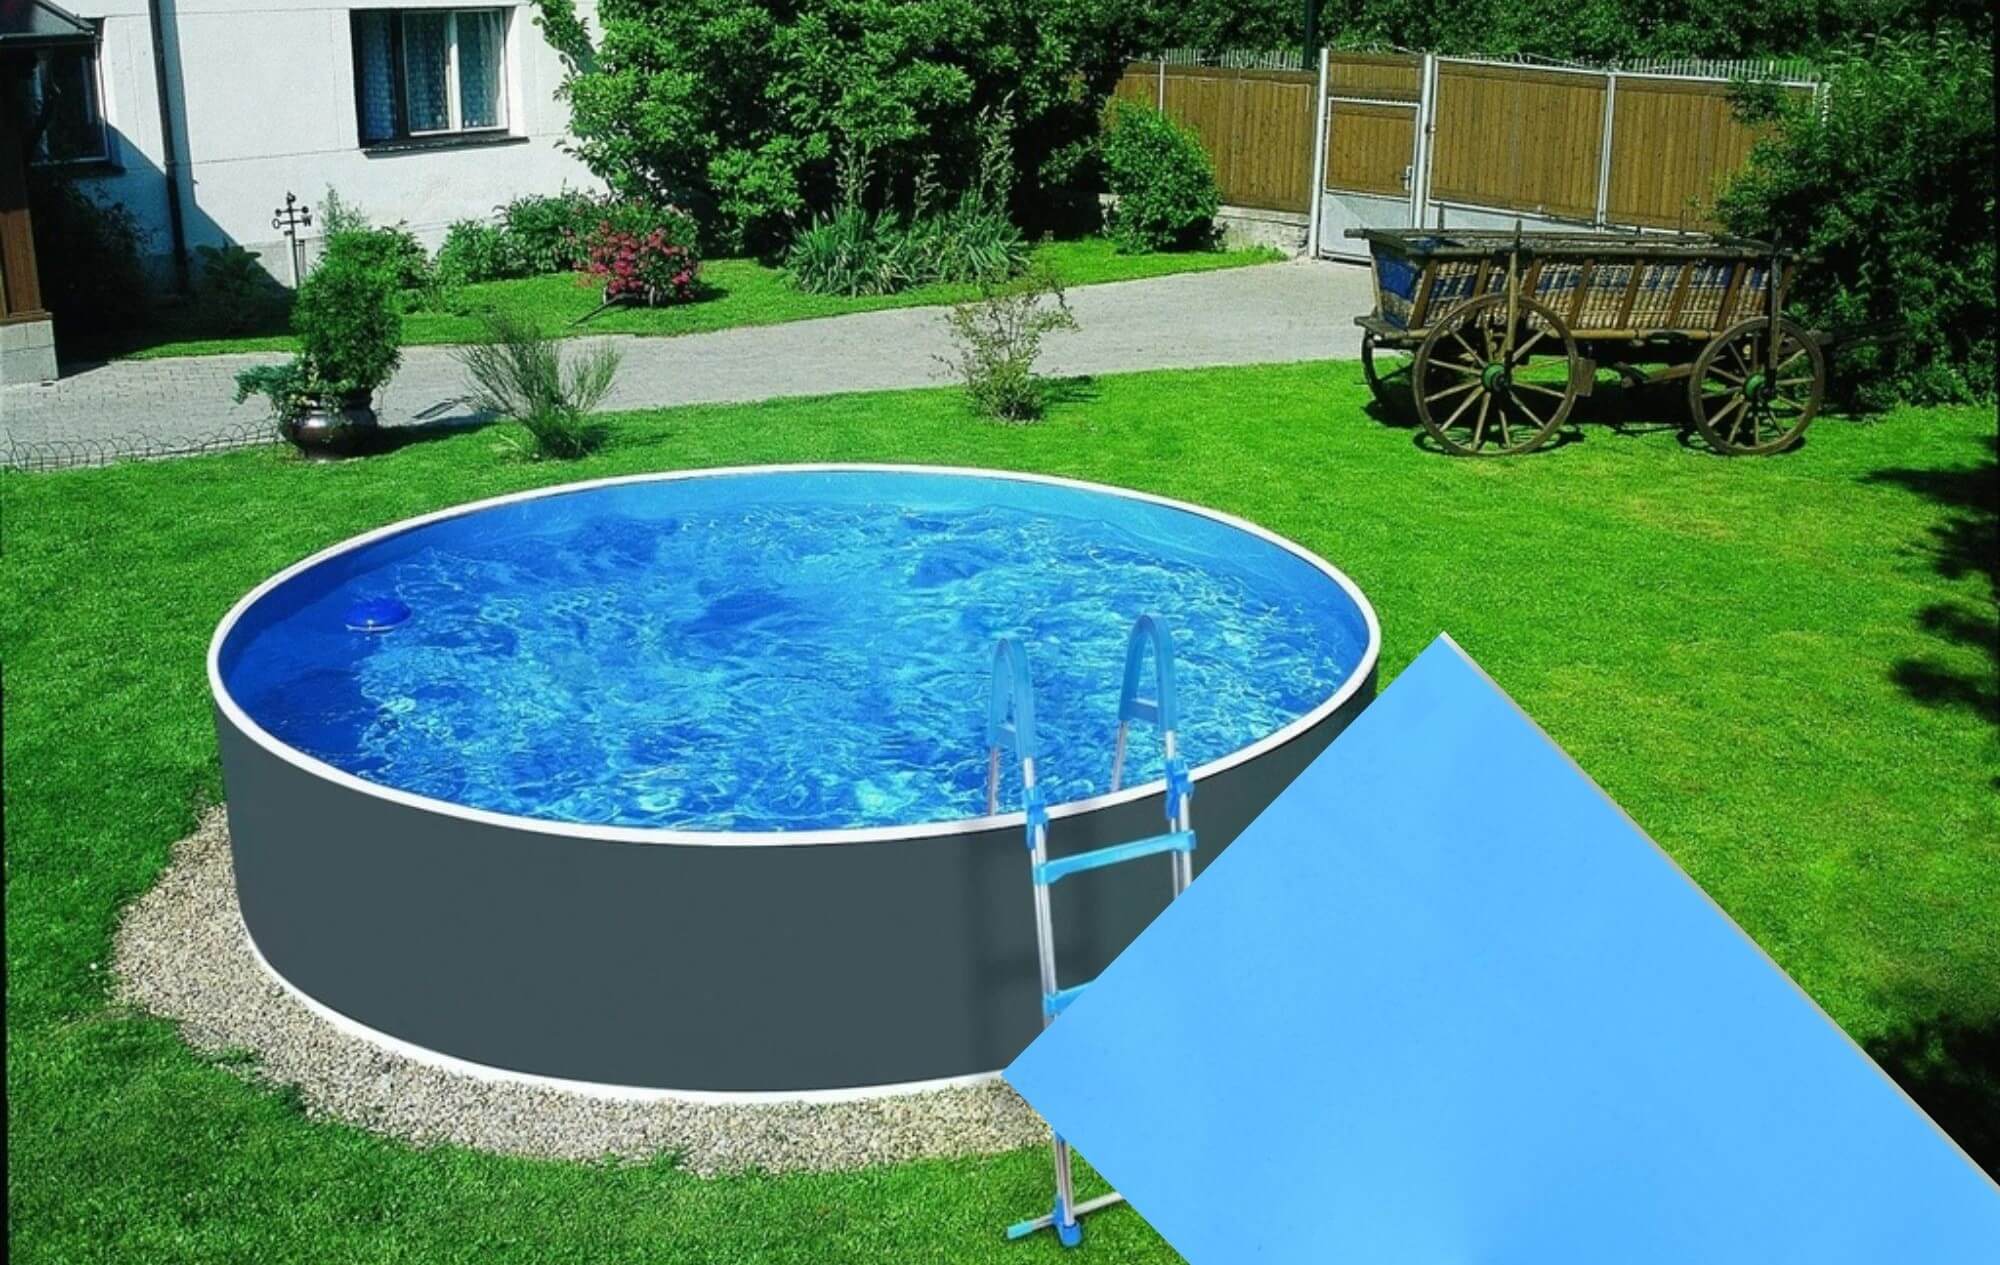 Planet Pool Náhradní bazénová fólie Blue pro bazén 3,6 m x 0,92 m